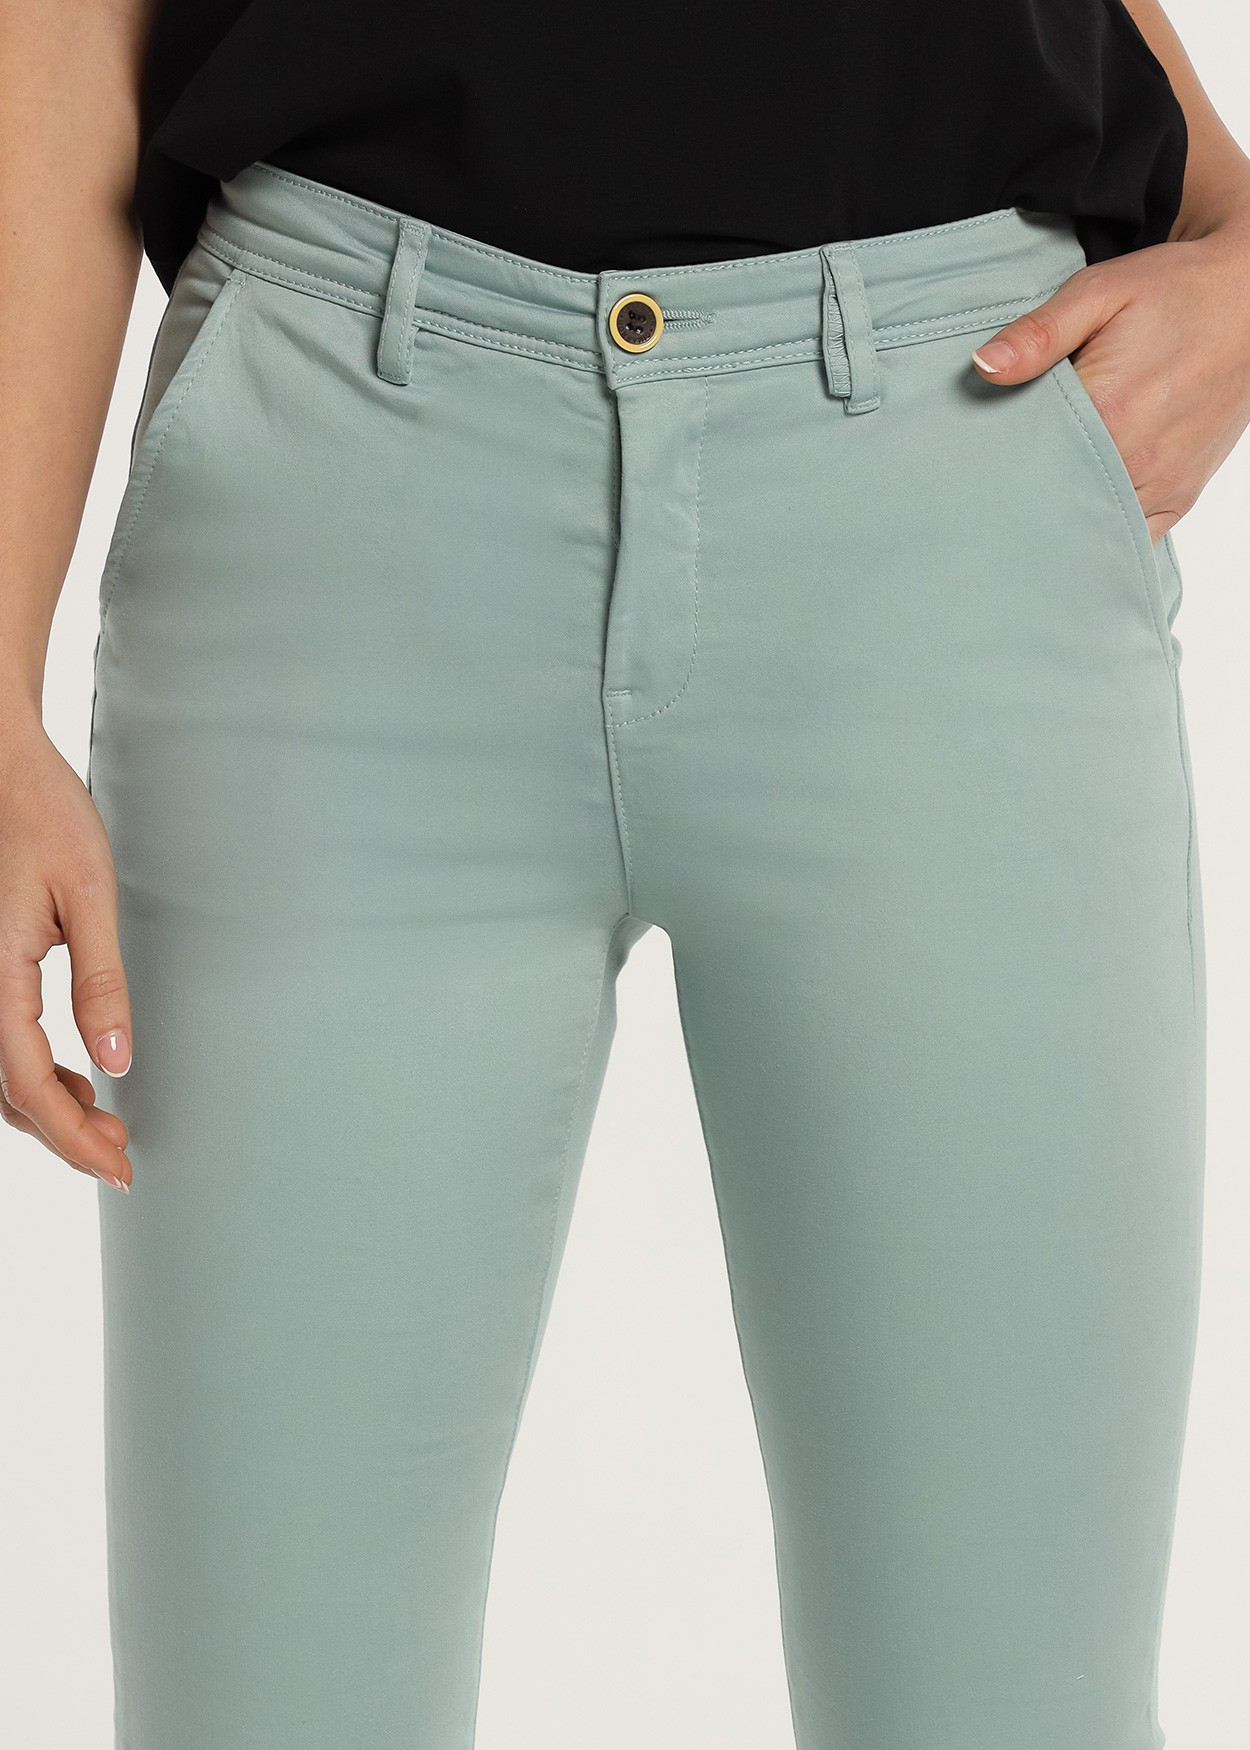 CLYDE-NECTAR - Pantalon Chino - Slim - Satin Elastique Longueur Courte | Tailles en Pouces Cimarron